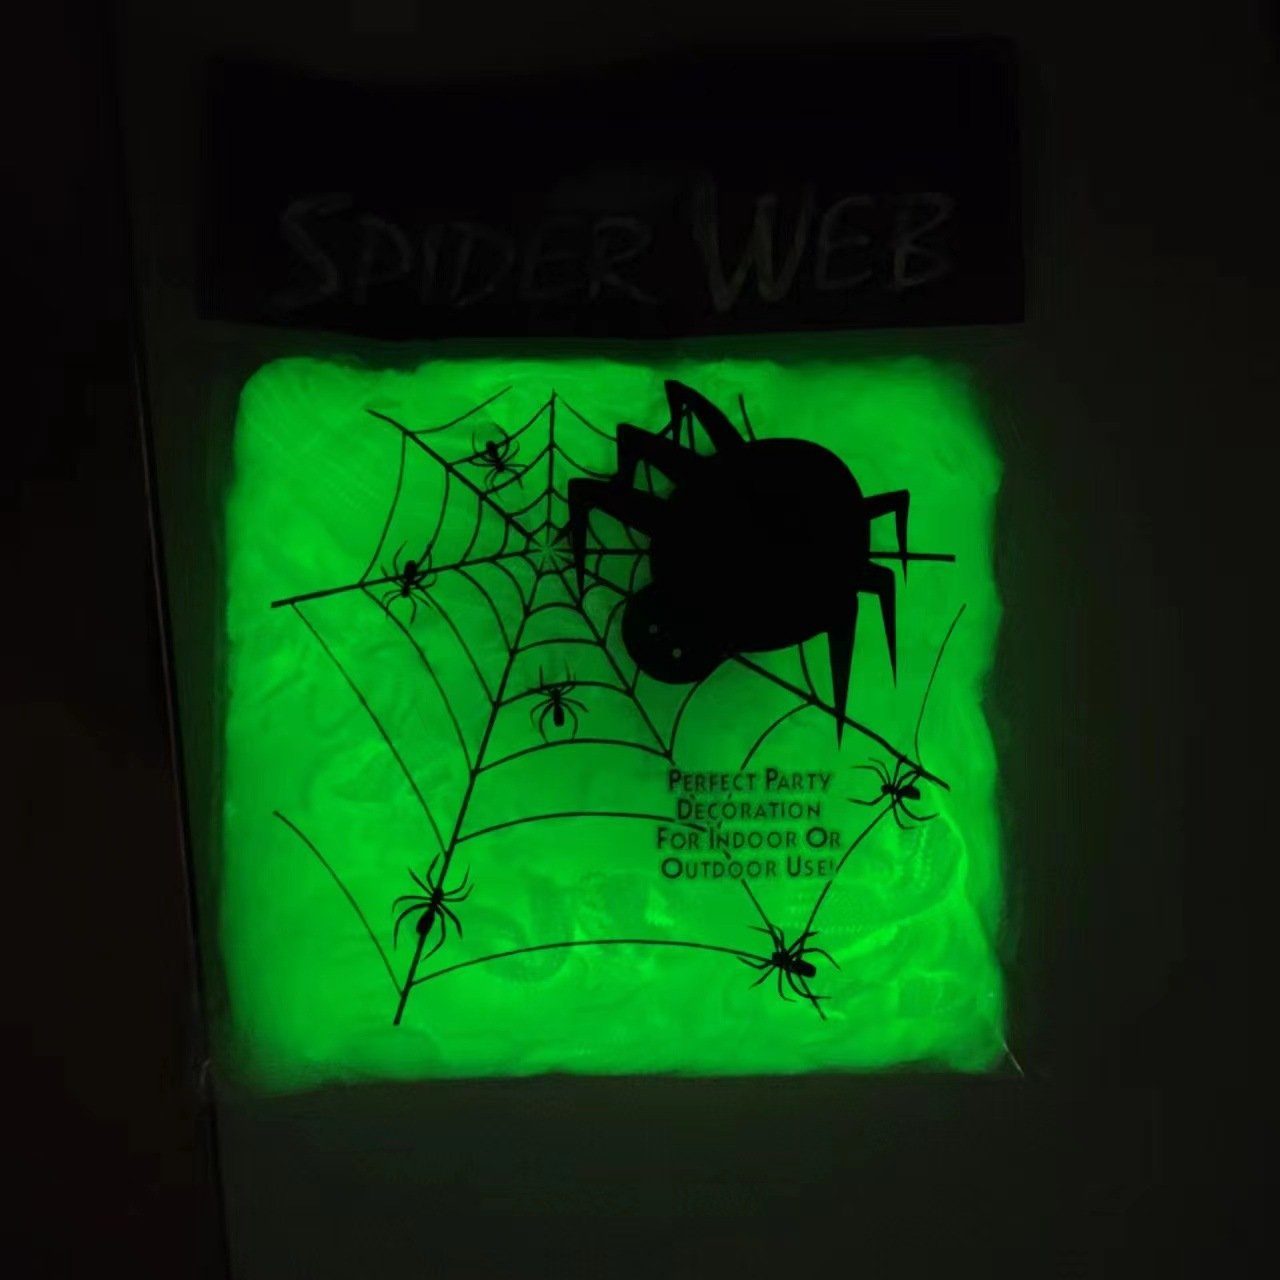 PRECORN leuchtend Spinnen Spinnennetz Halloween Deko 20 + Party Hängedekoration Fasching